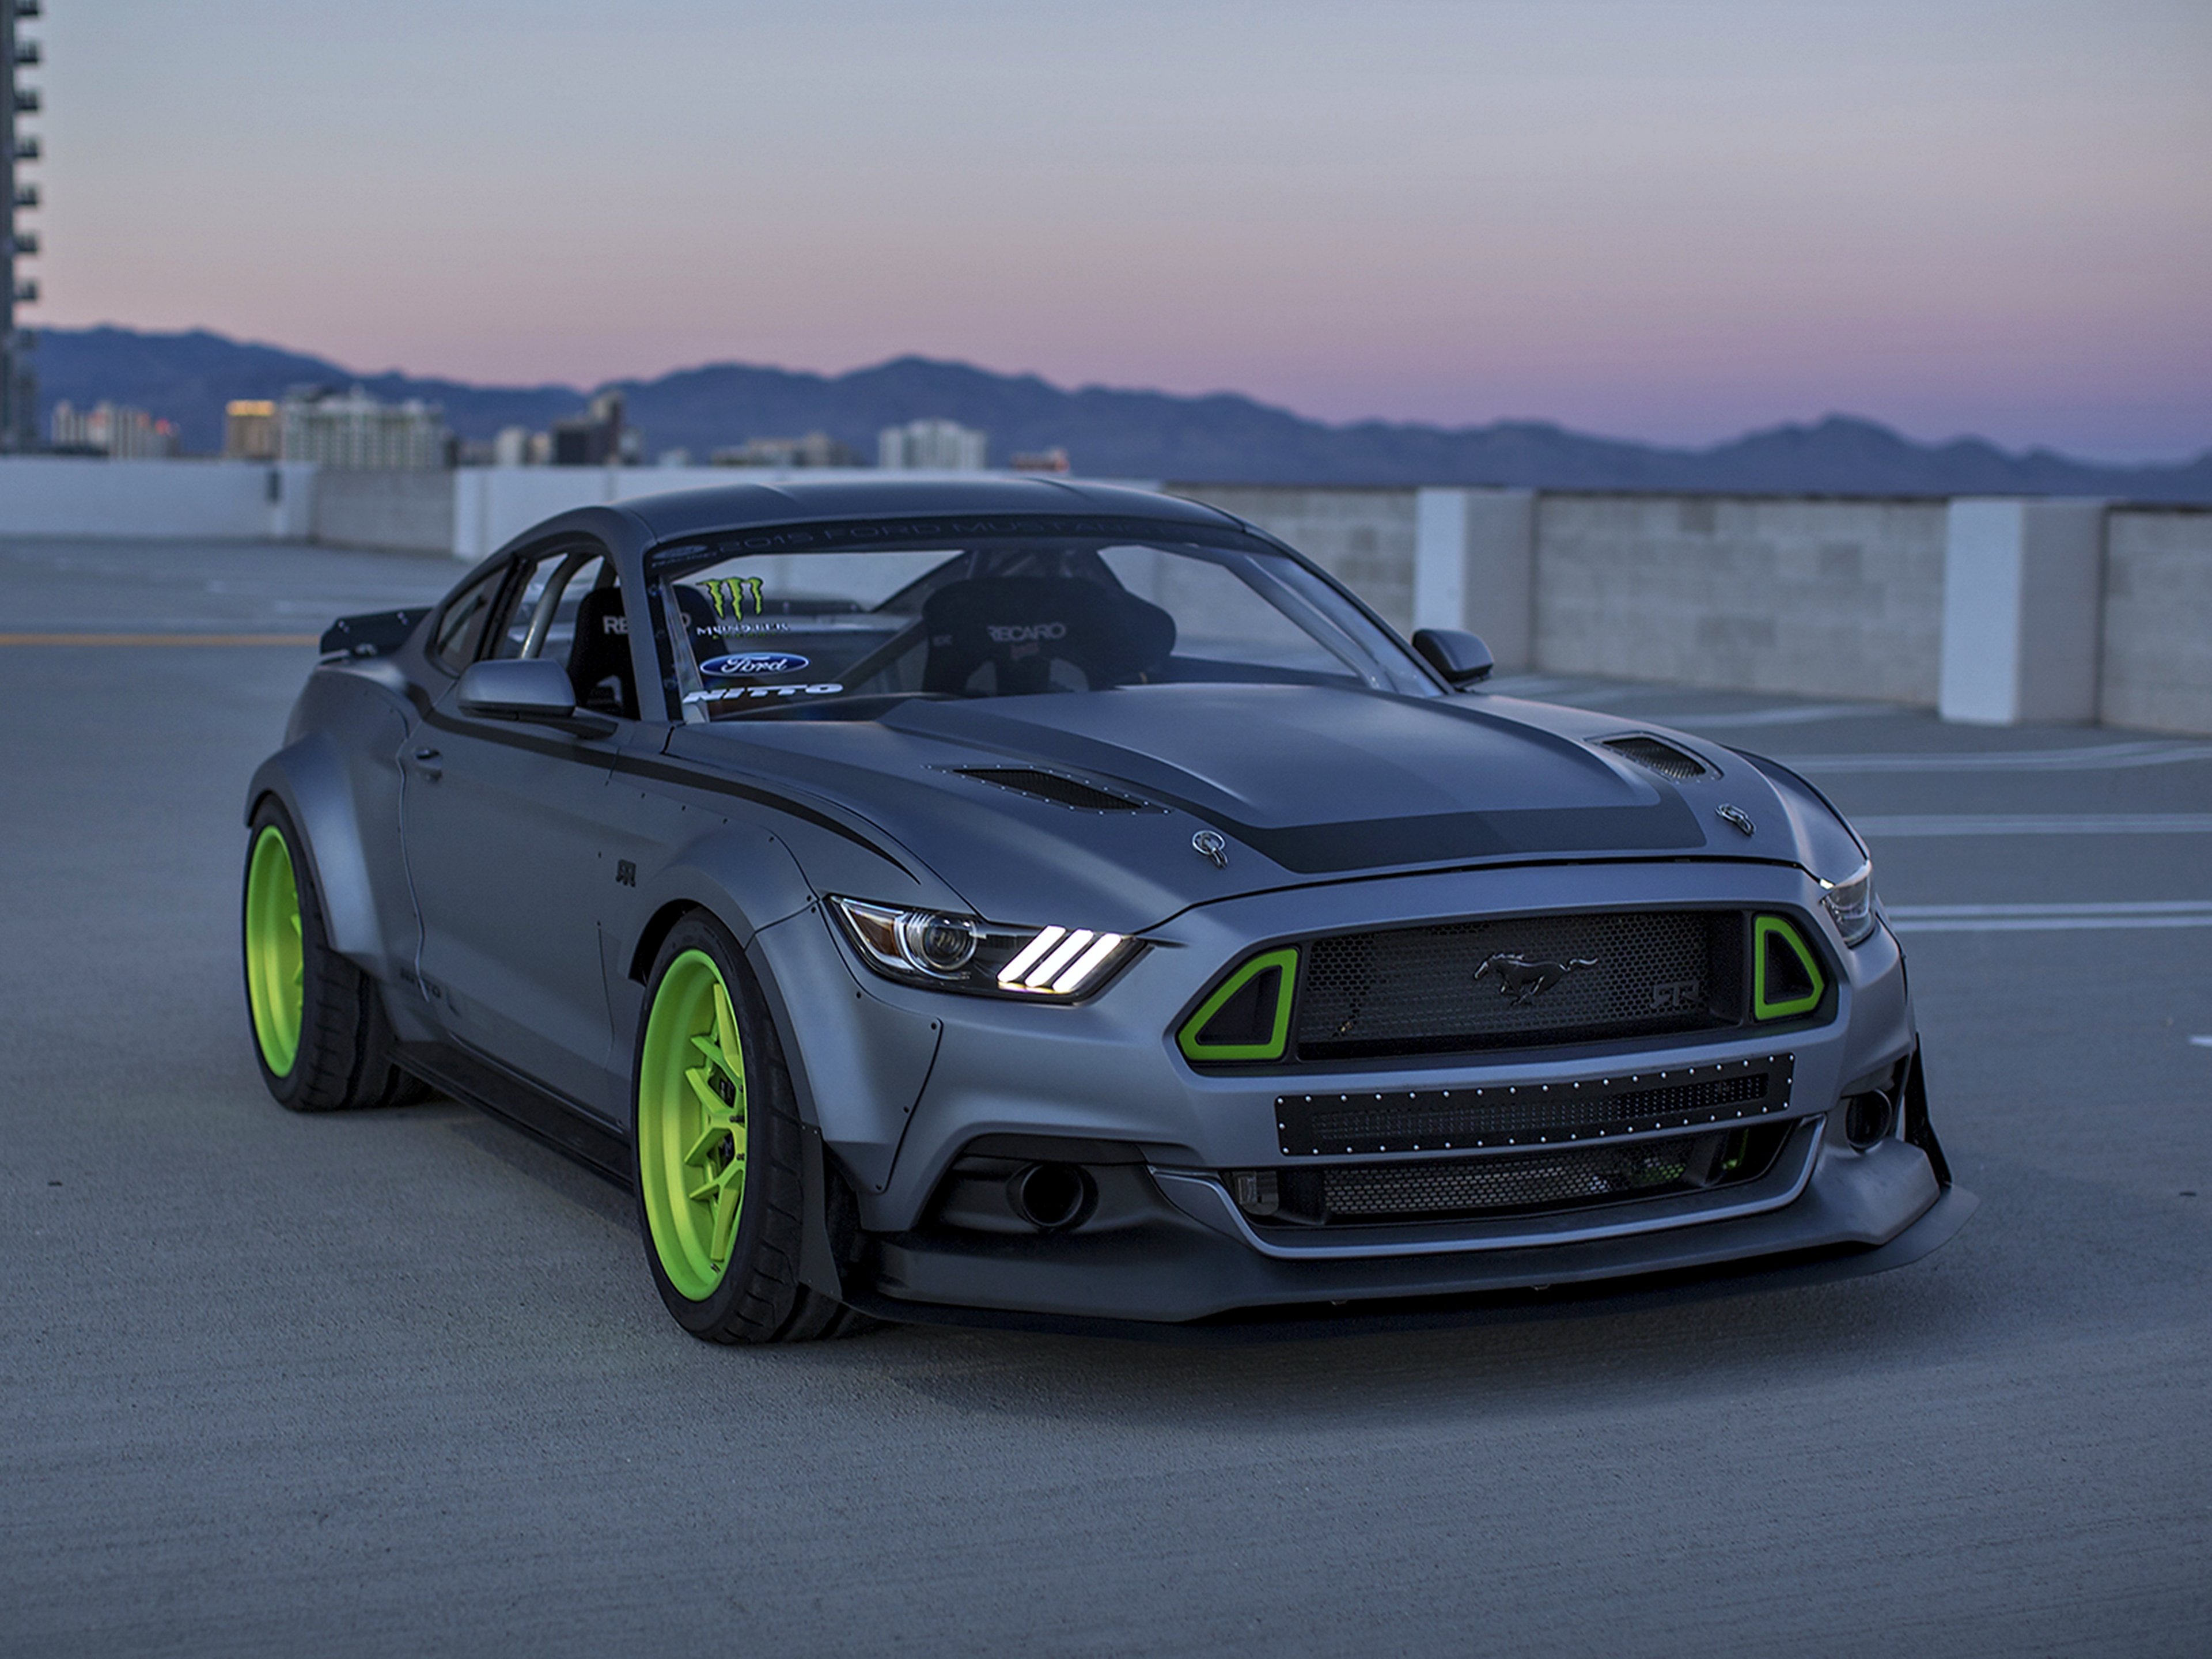 2014, Ford, Mustang, Rtr, Spec 5, Gray, Speed, Motors